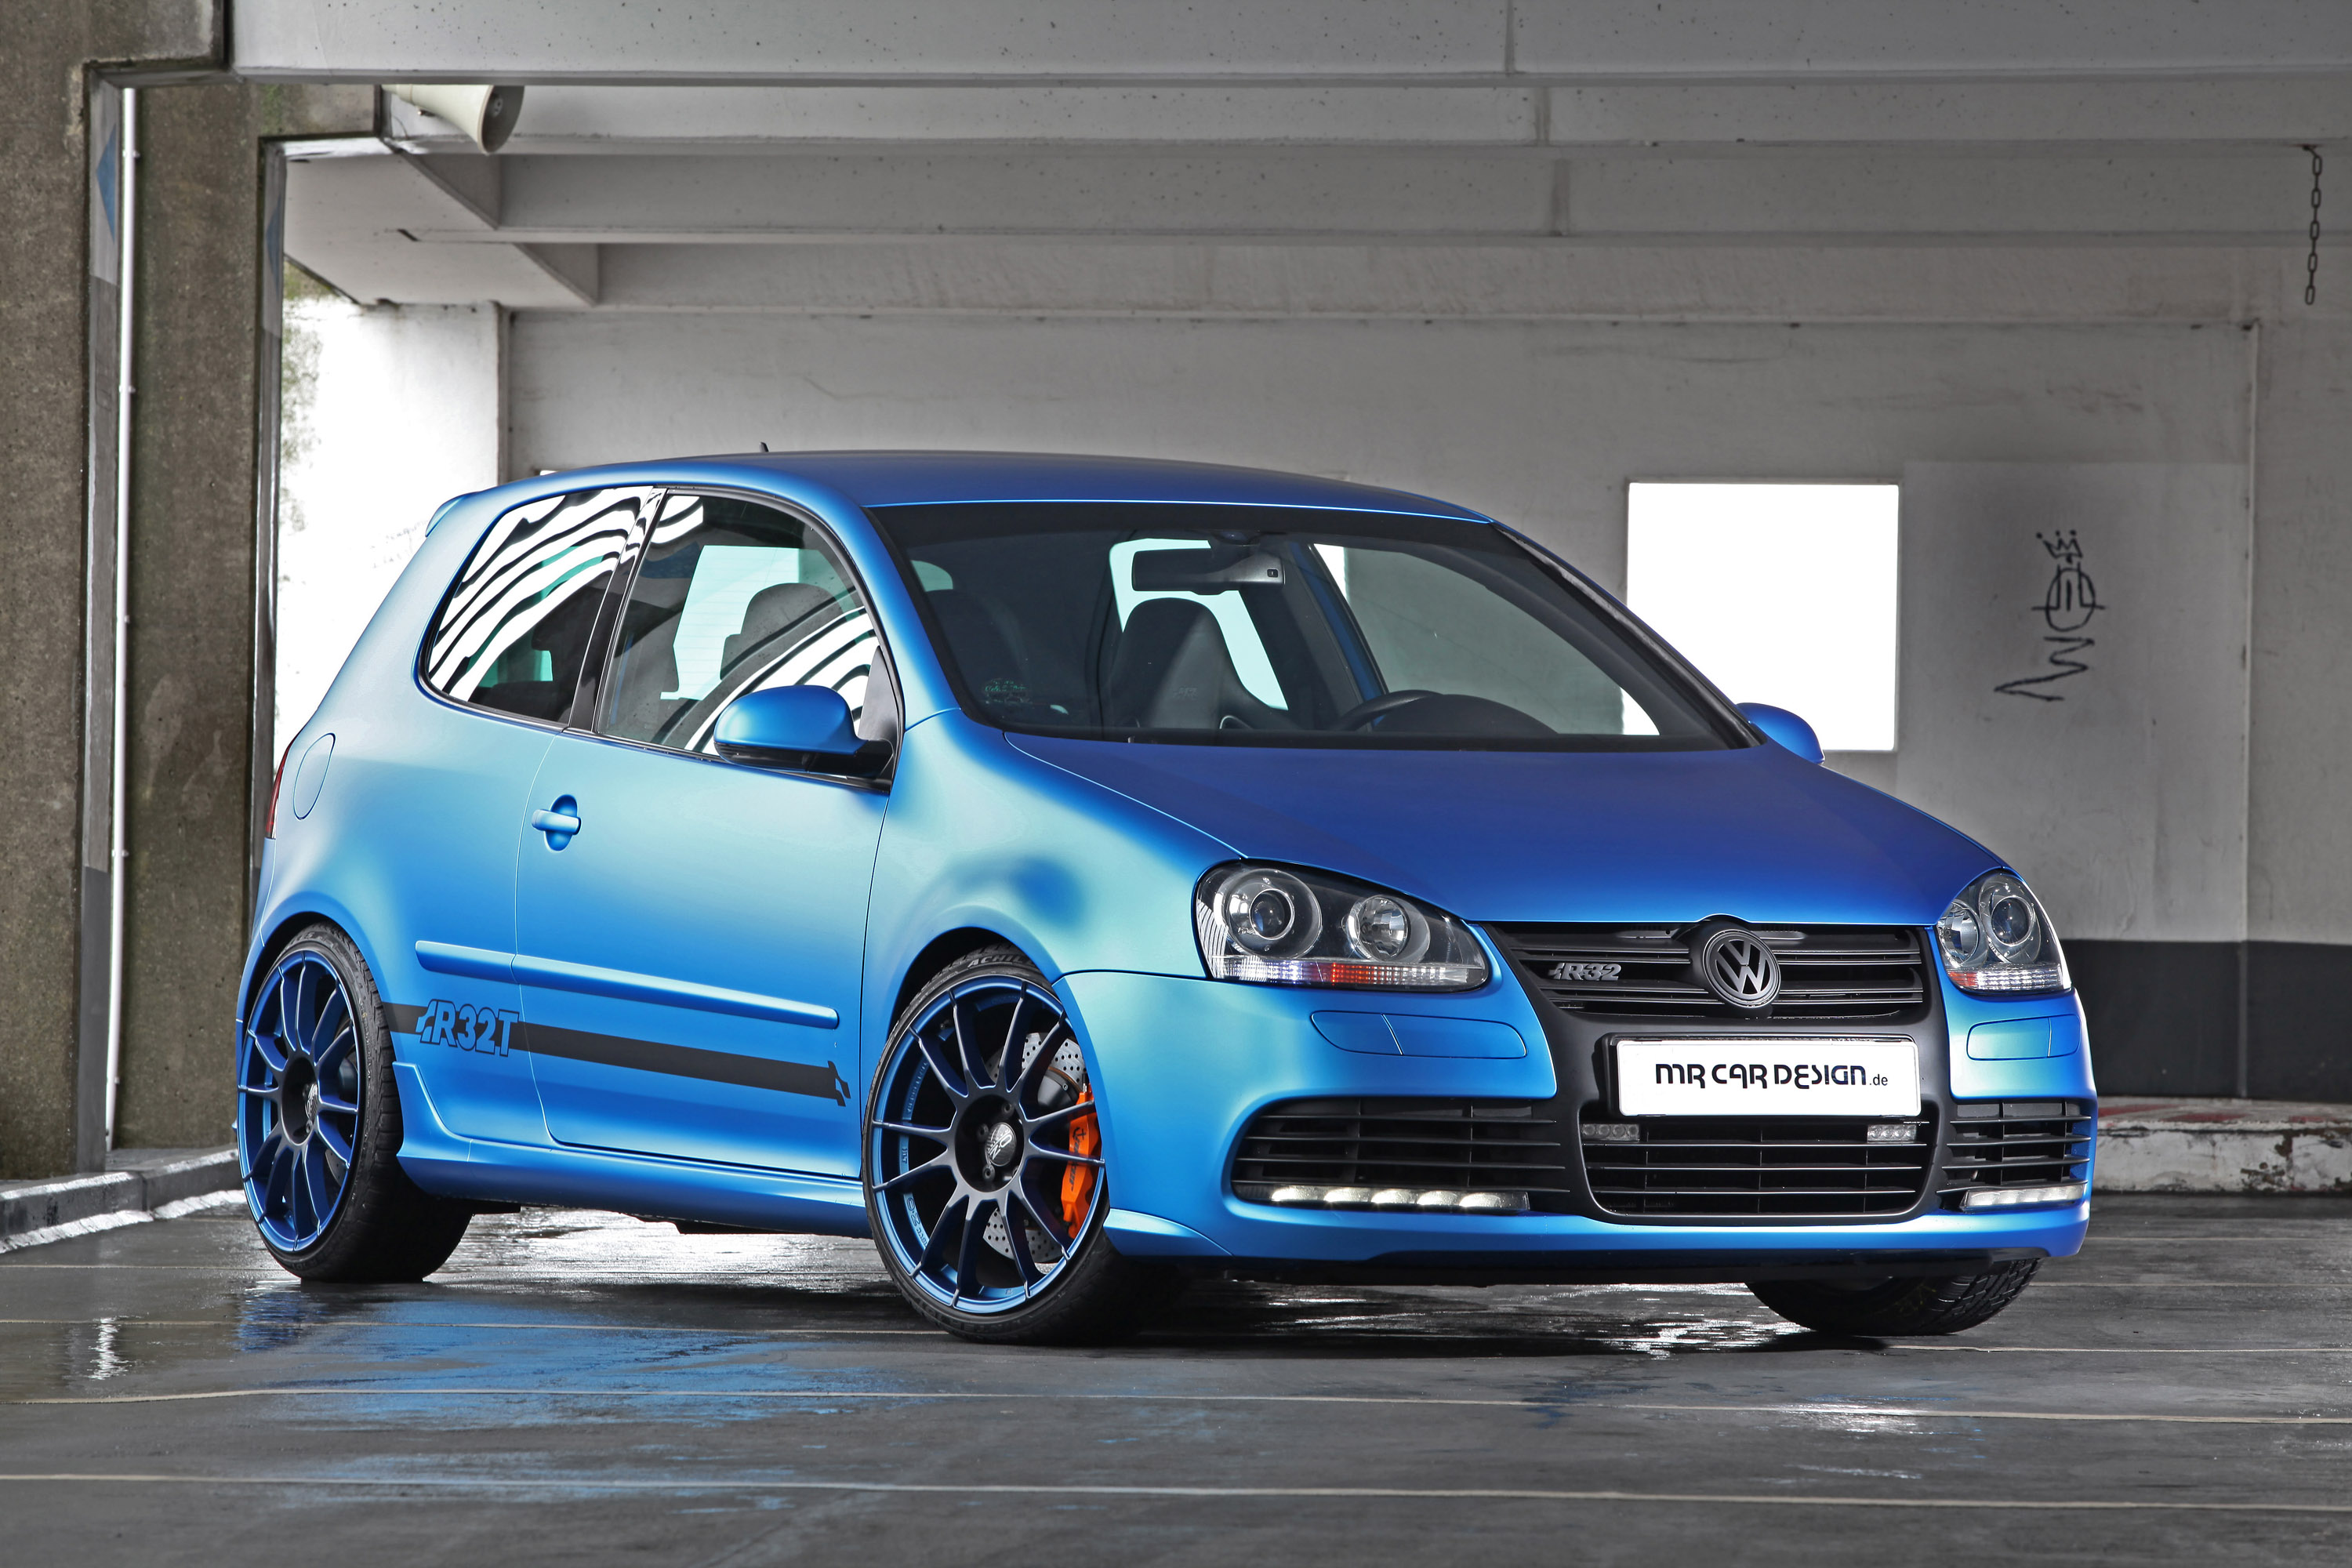 2012, Mr car design, Volkswagen, Golf, V i, R32, Tuning Wallpaper